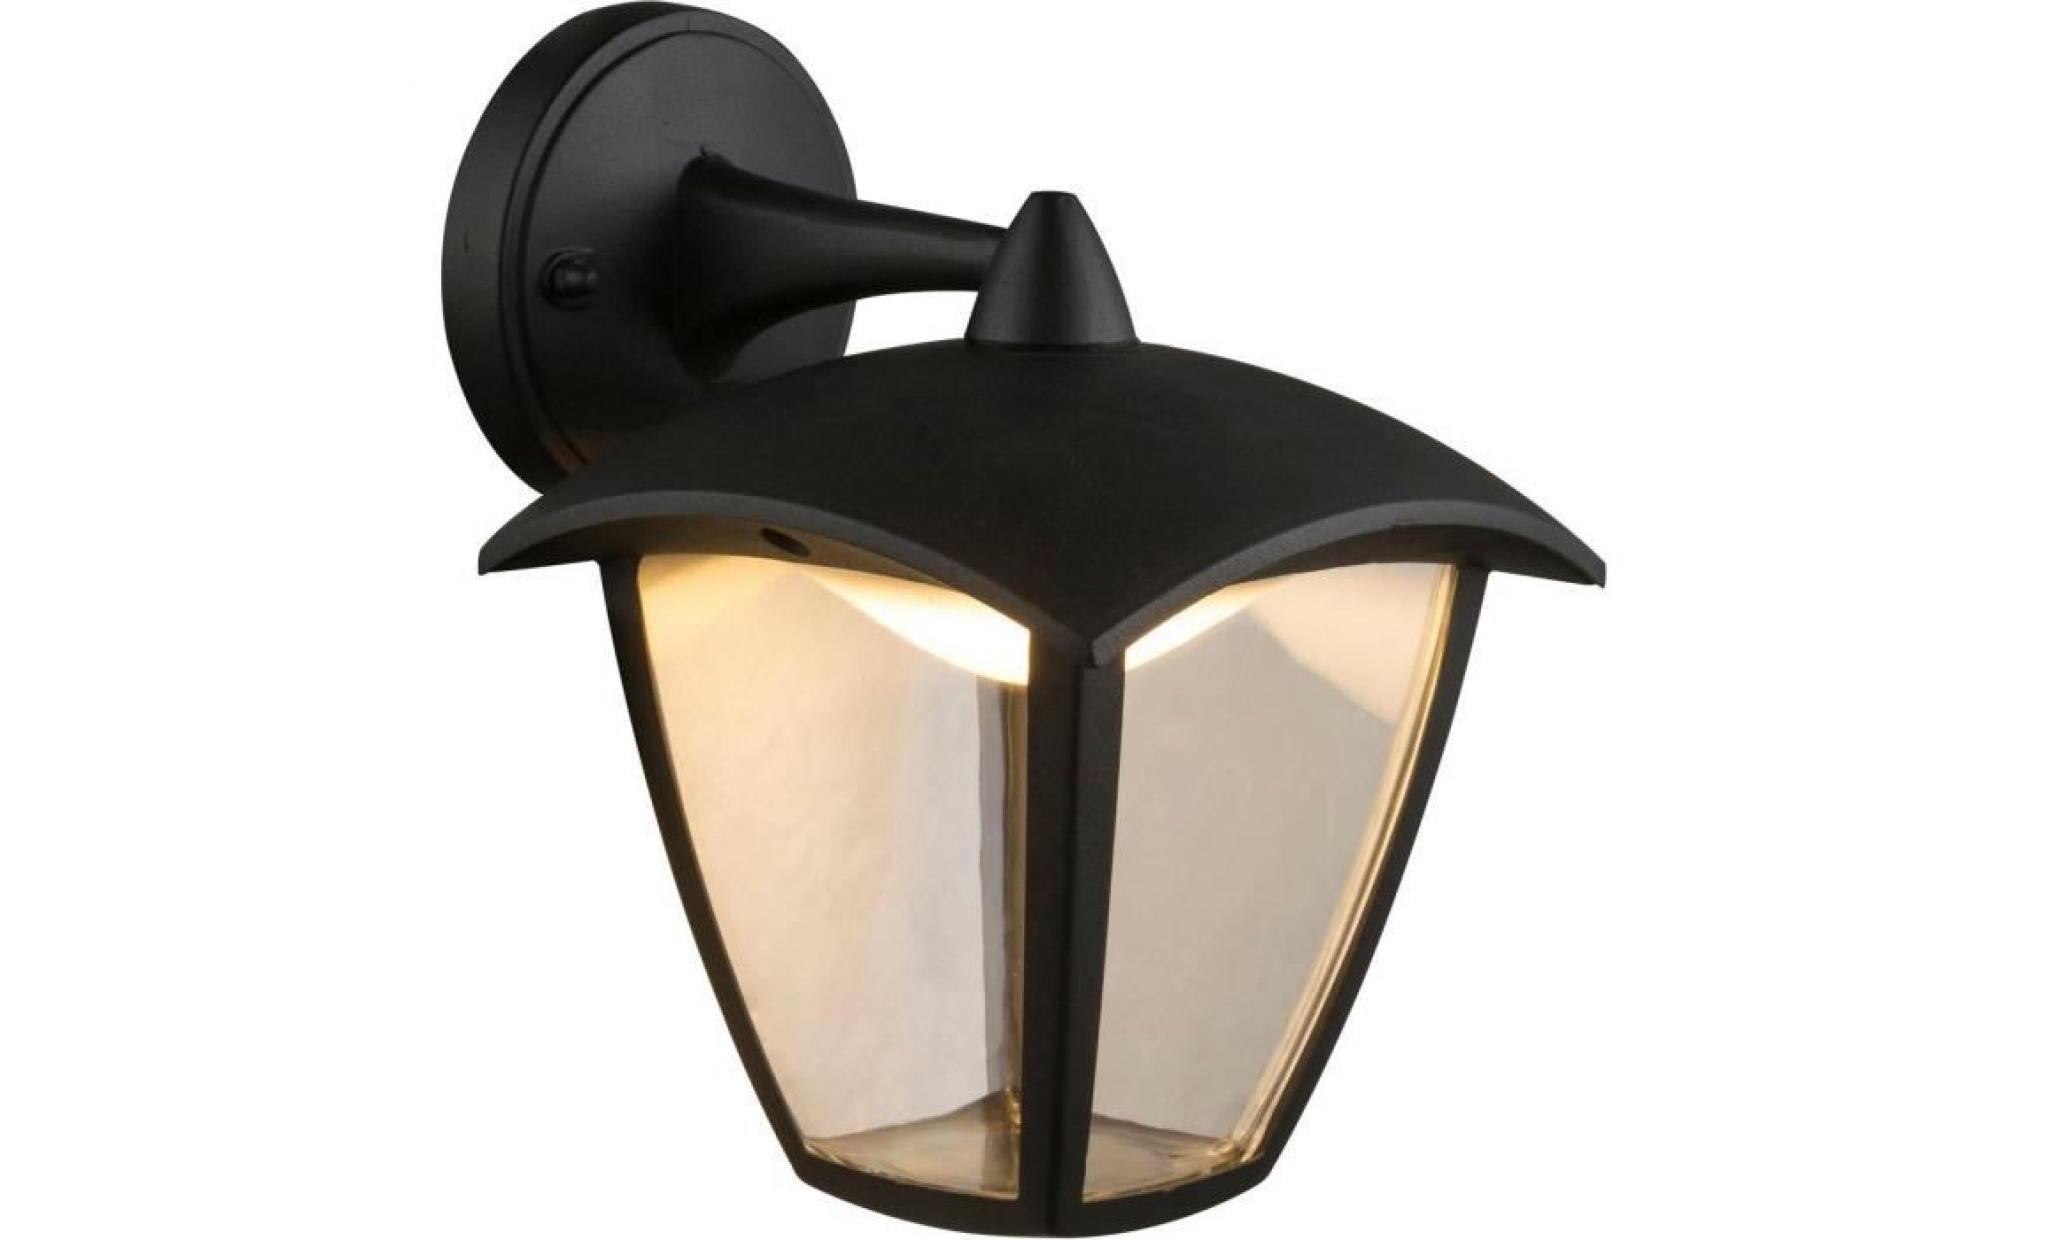 applique extérieur lanterne moderne led delio noire en aluminium kw170100